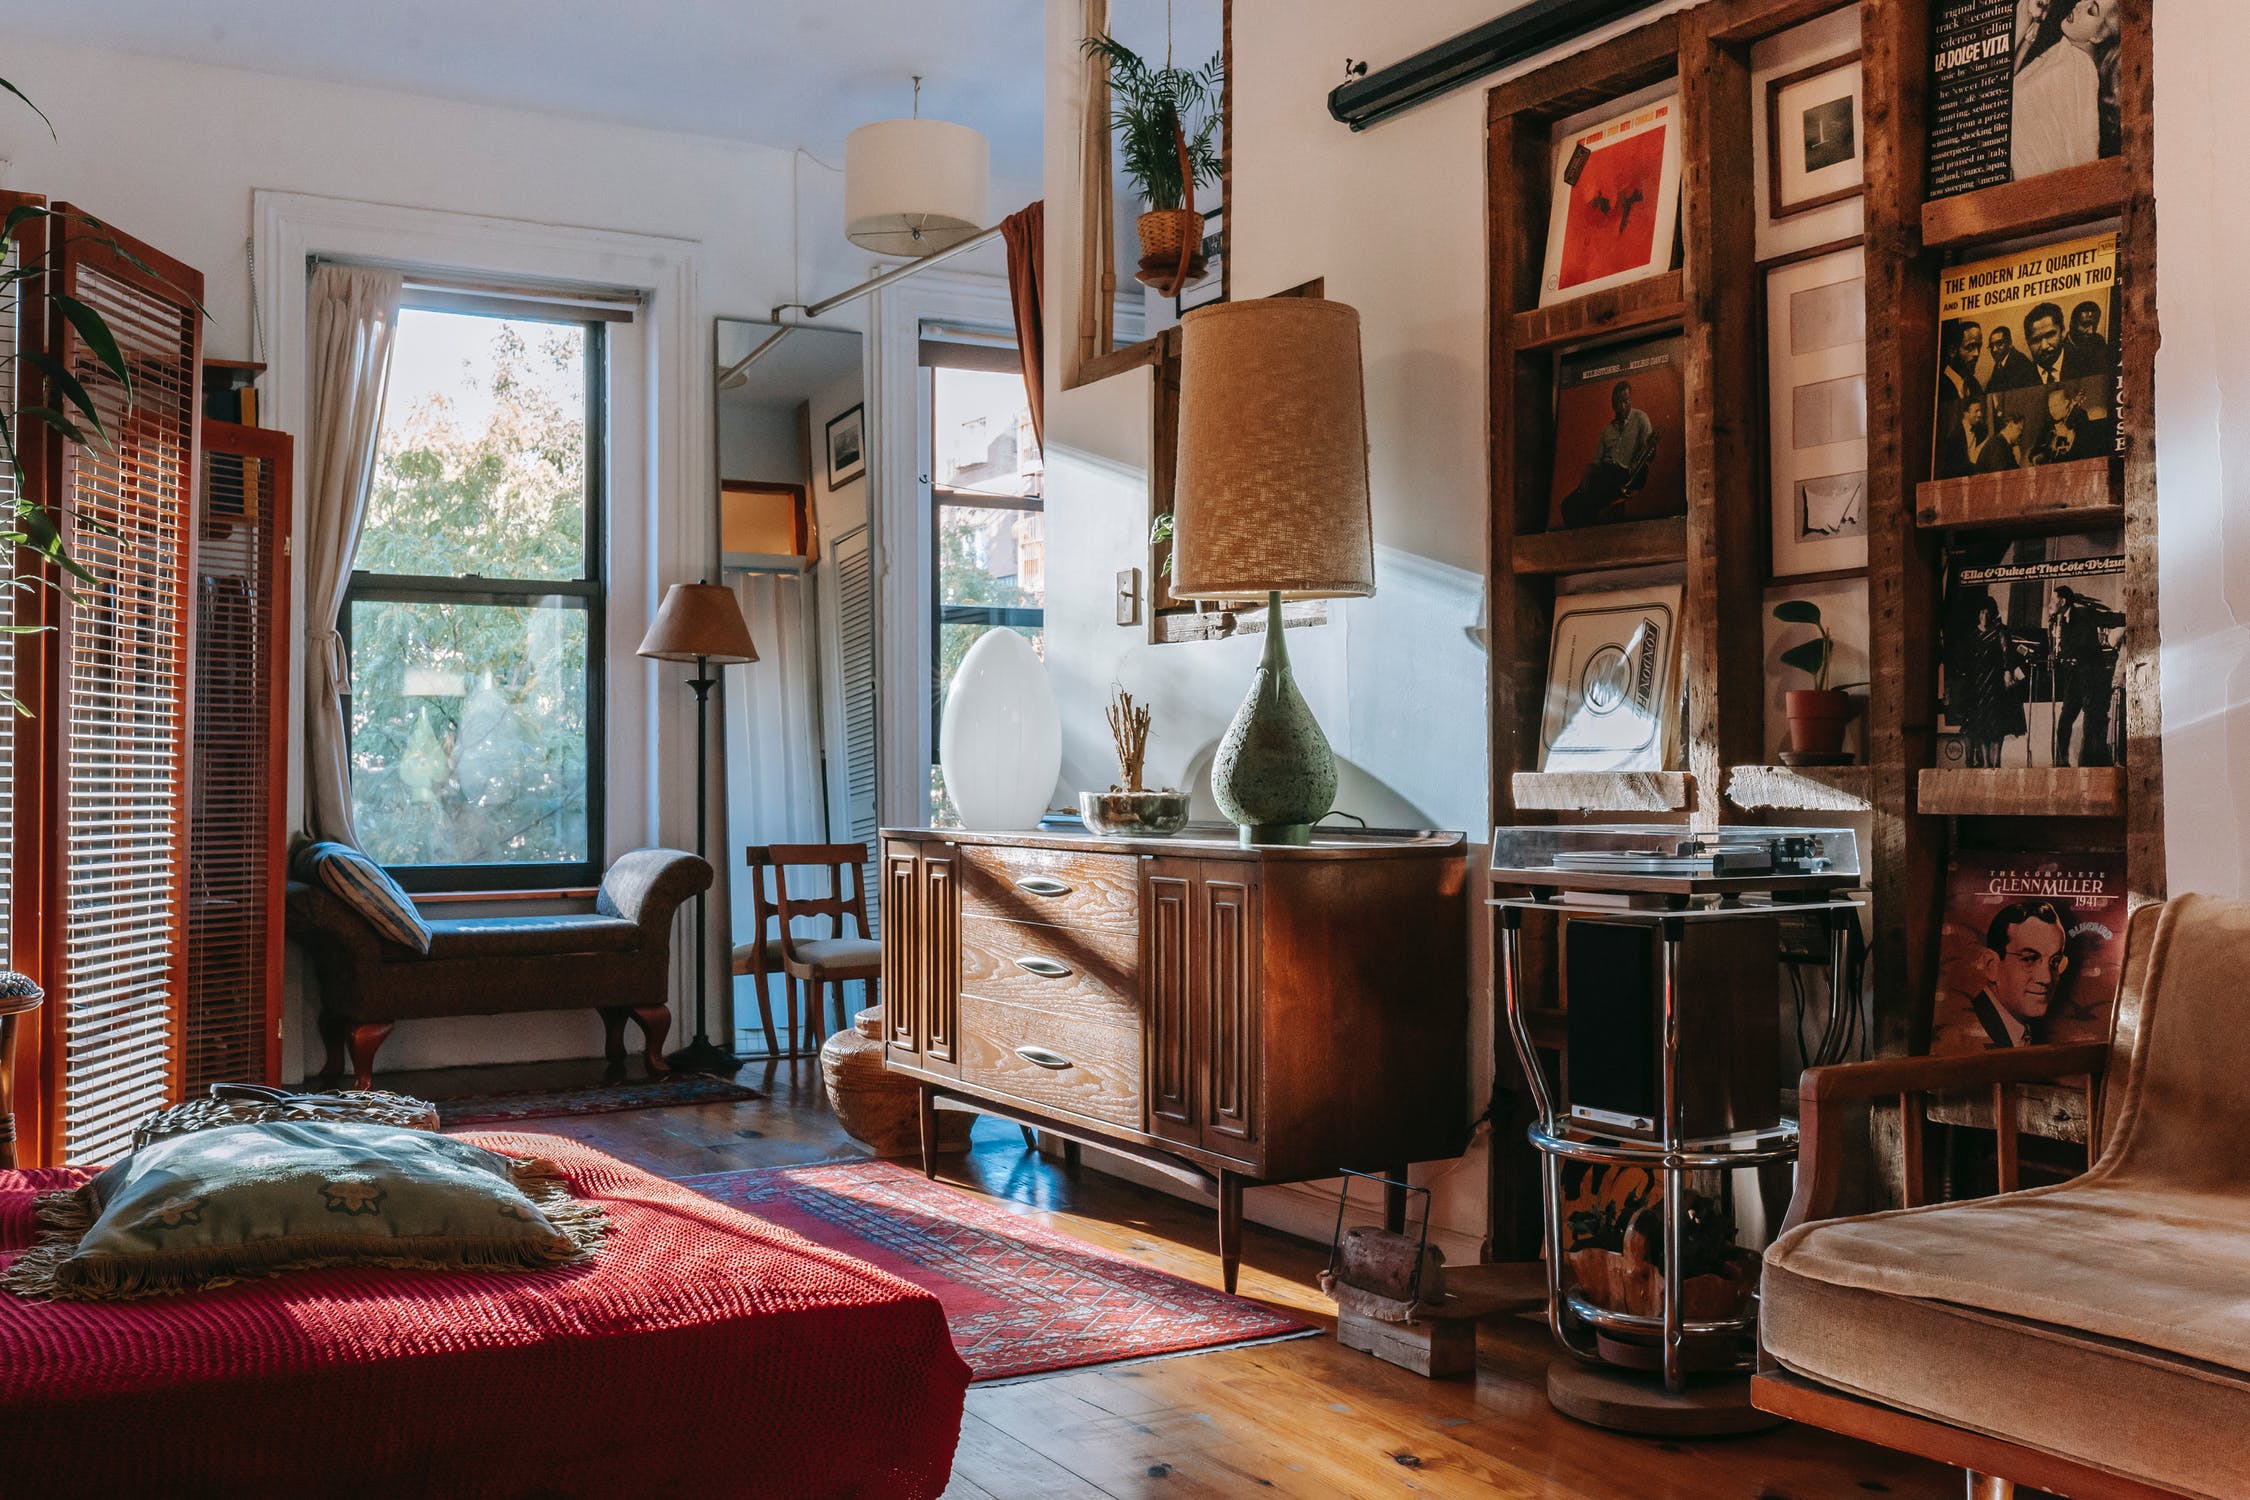 Should You Buy Vintage Living Room Furniture